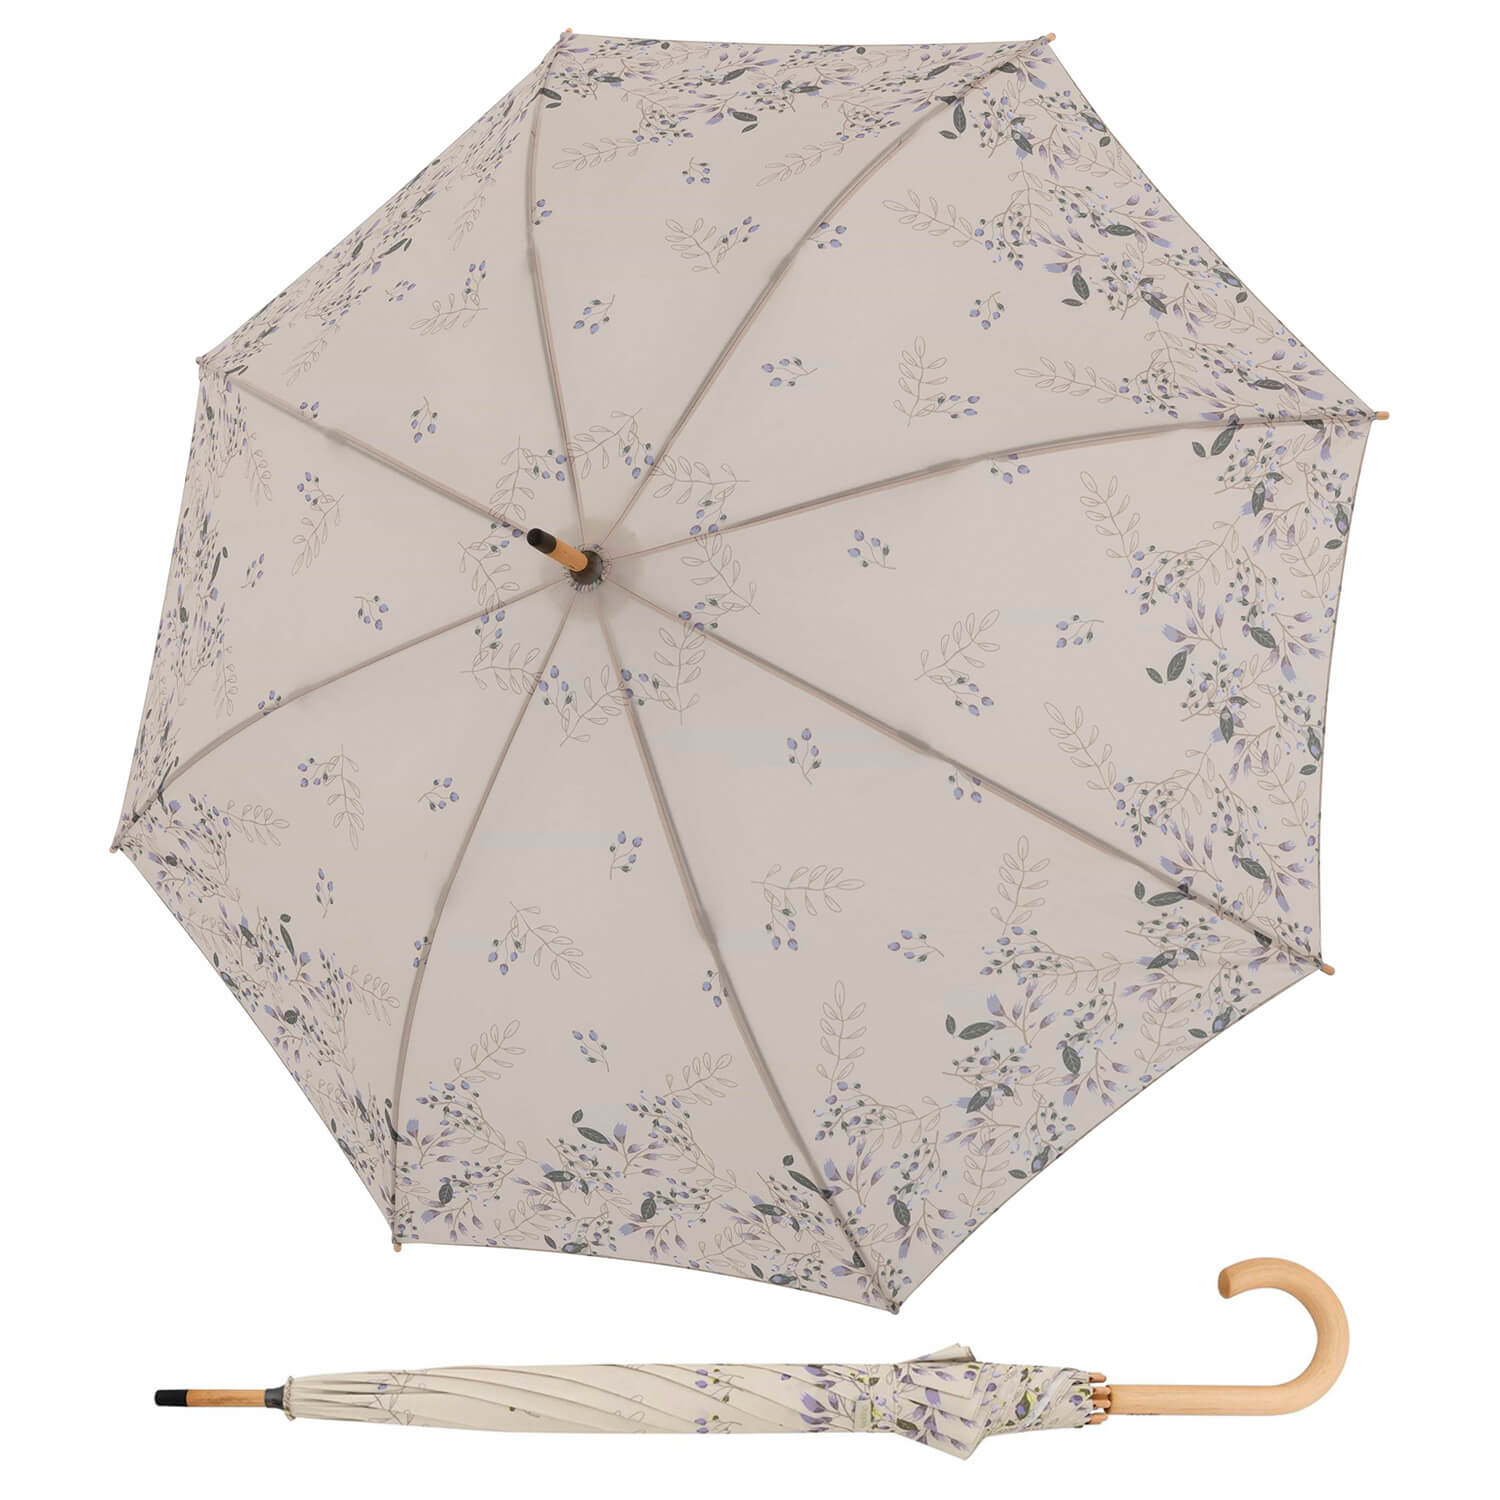 Zont eco. Женский зонт балерины Fulton. Craft Eco зонт (304/0,8) ф550 для взрывного клапана.